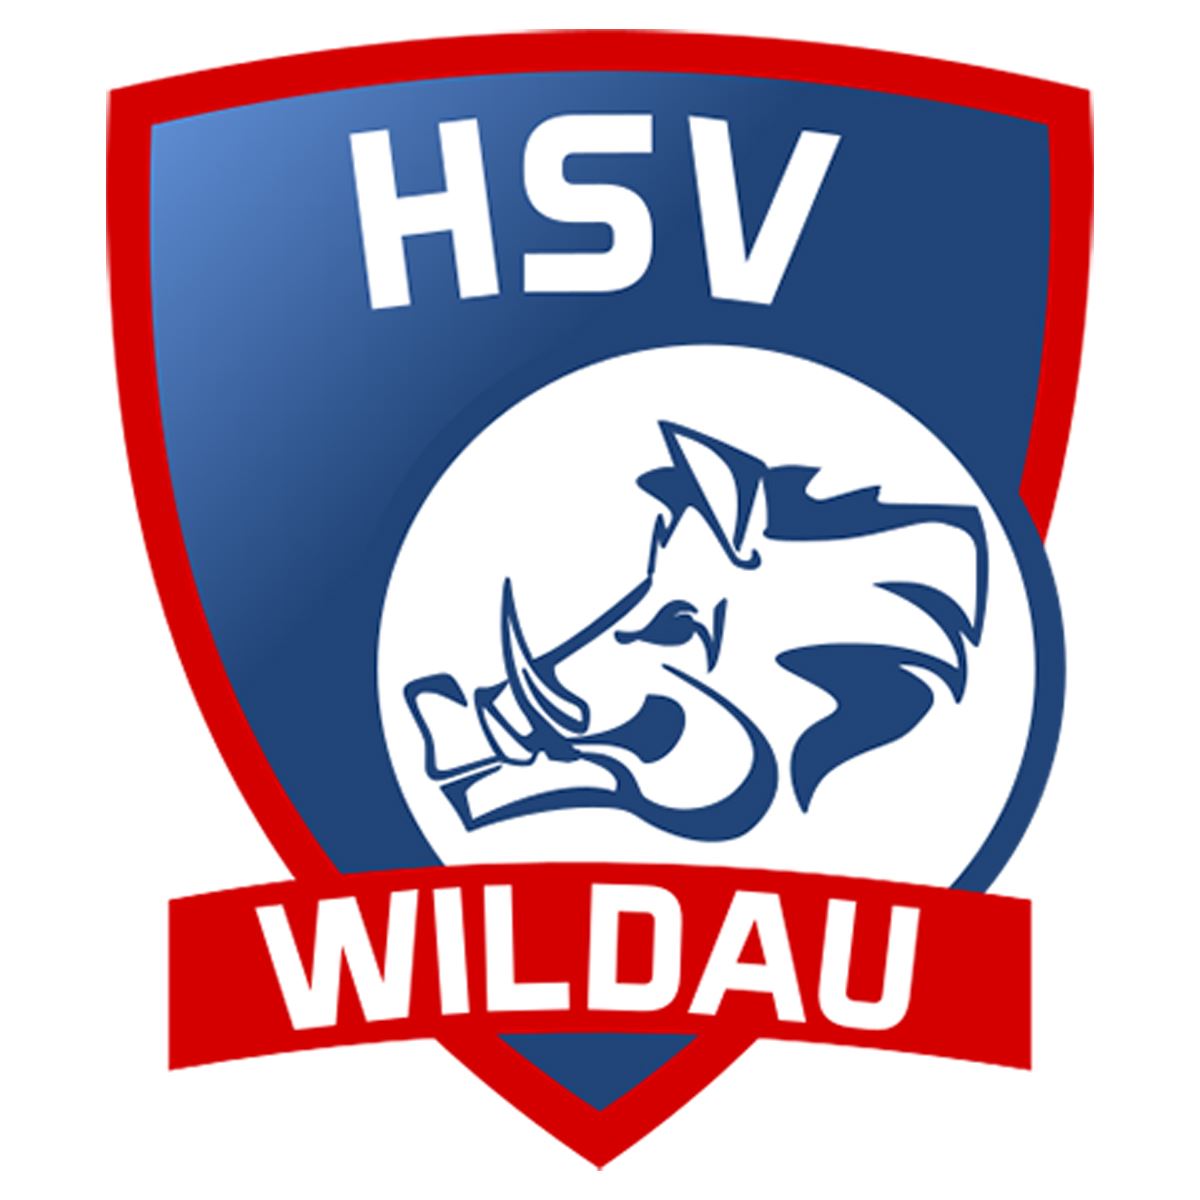 HSV Wildau 1950